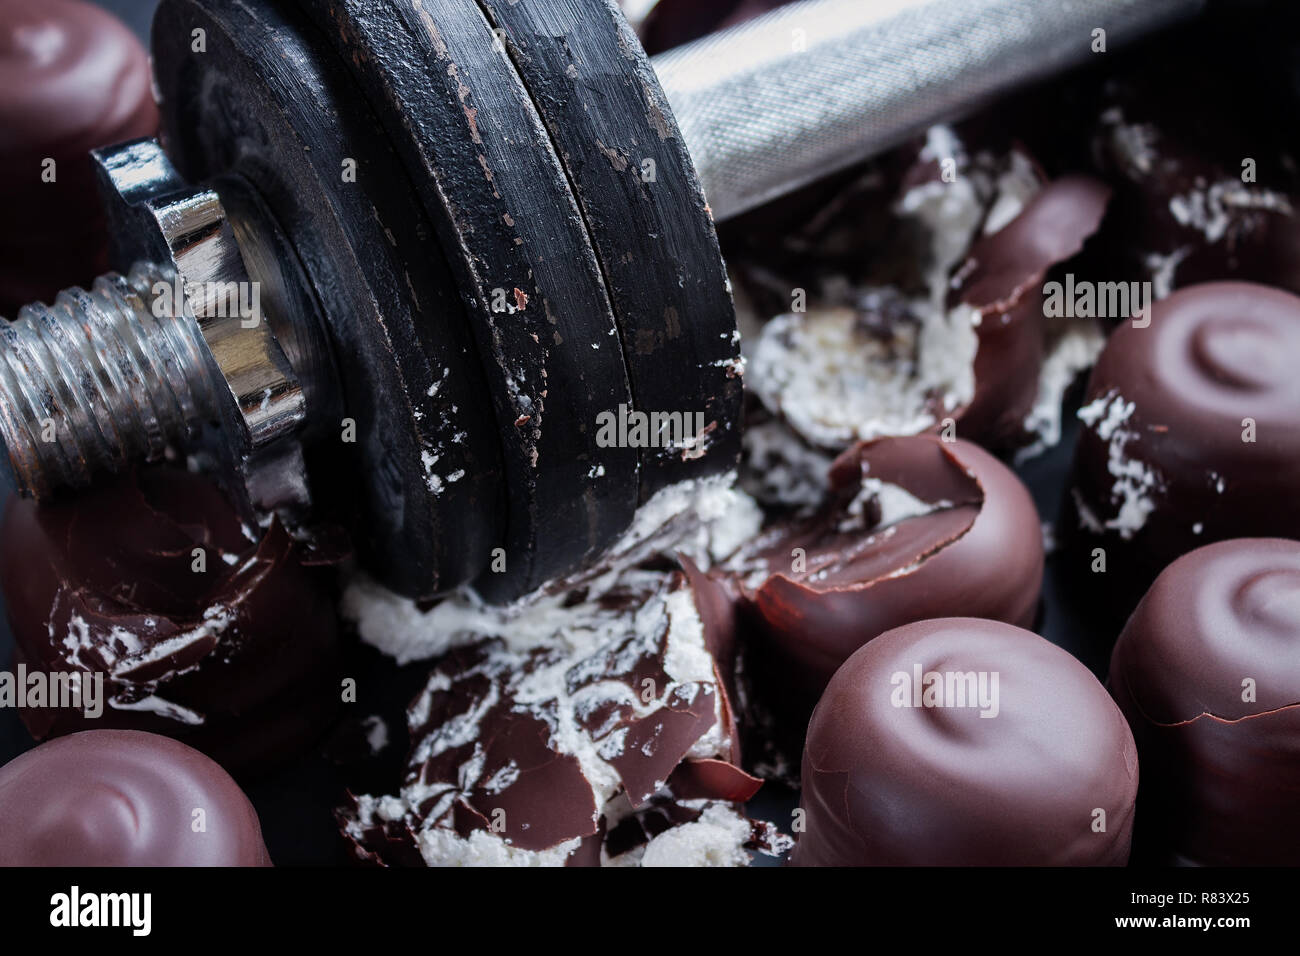 Eisen Hantel fiel in der Mitte der Schokolade Marshmallows zu zerstören,  Diät Konzept Stockfotografie - Alamy